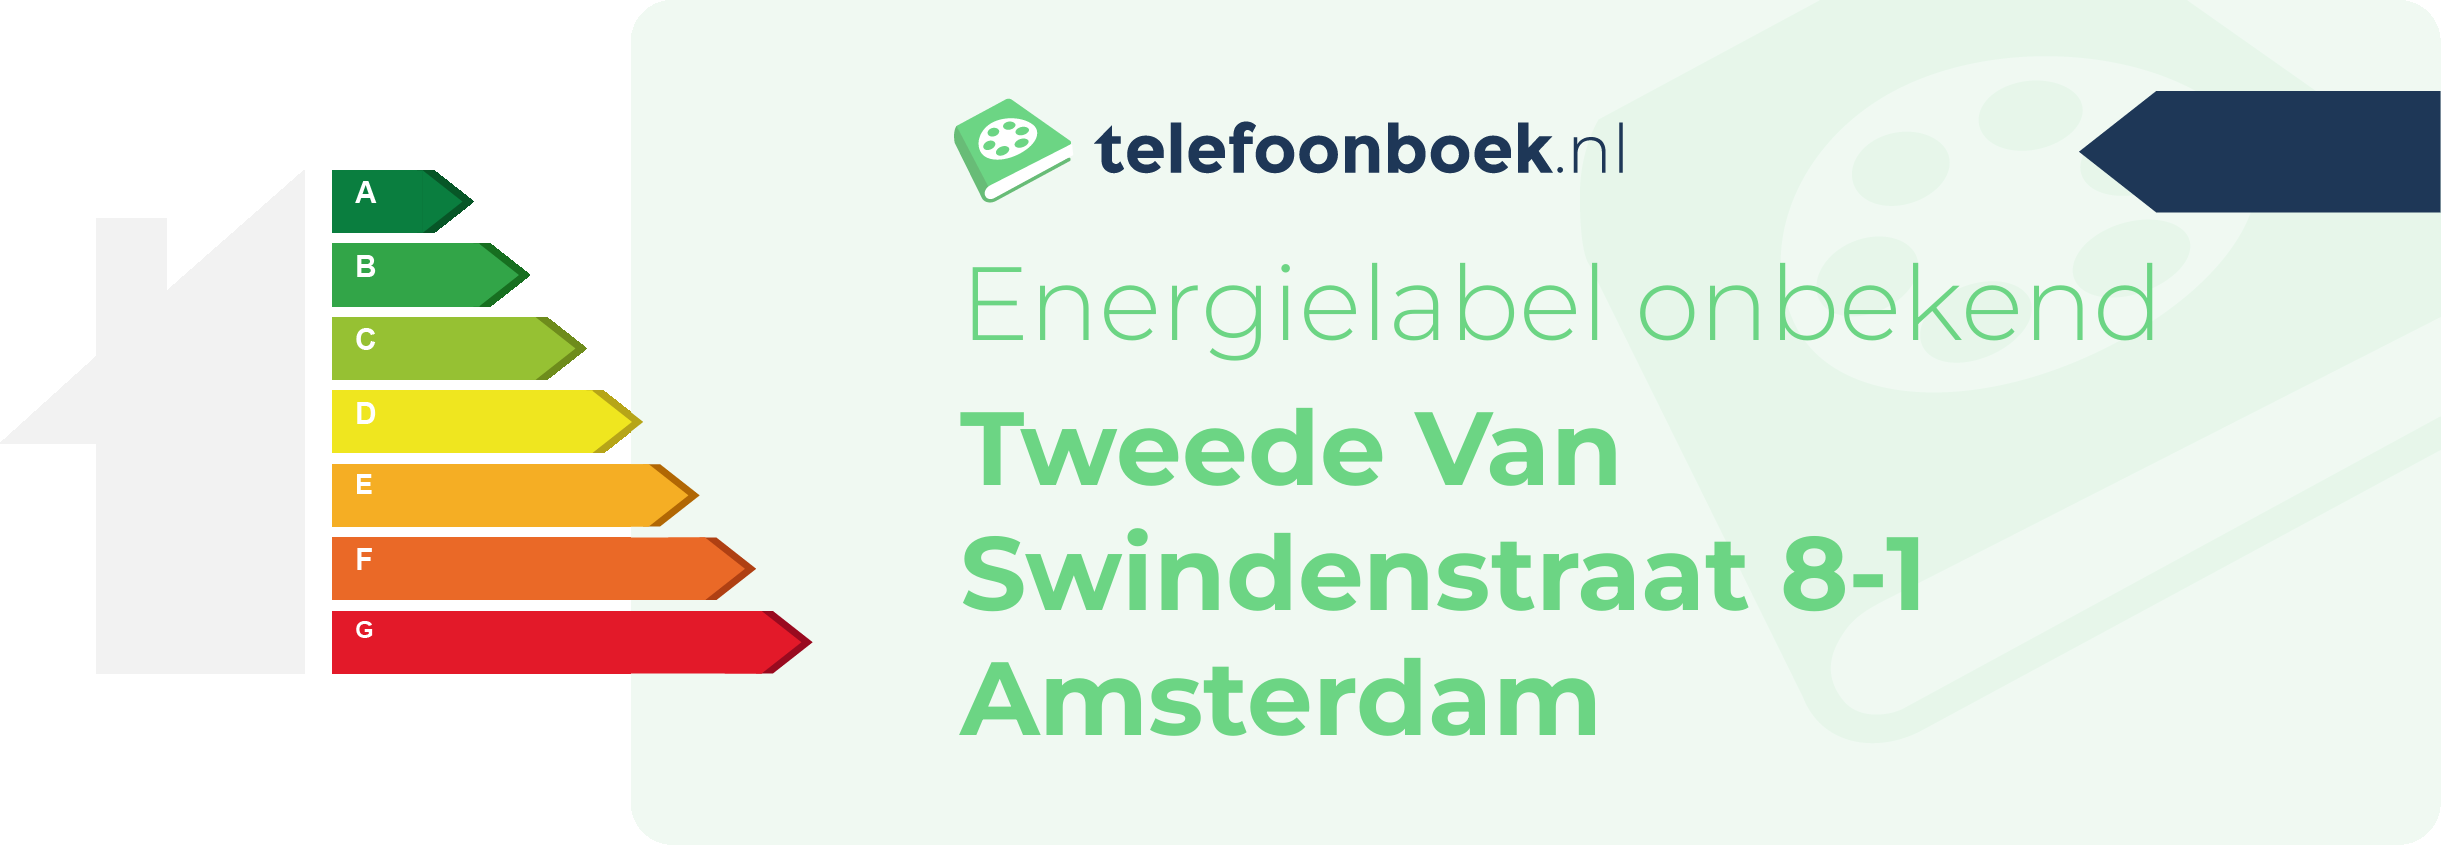 Energielabel Tweede Van Swindenstraat 8-1 Amsterdam